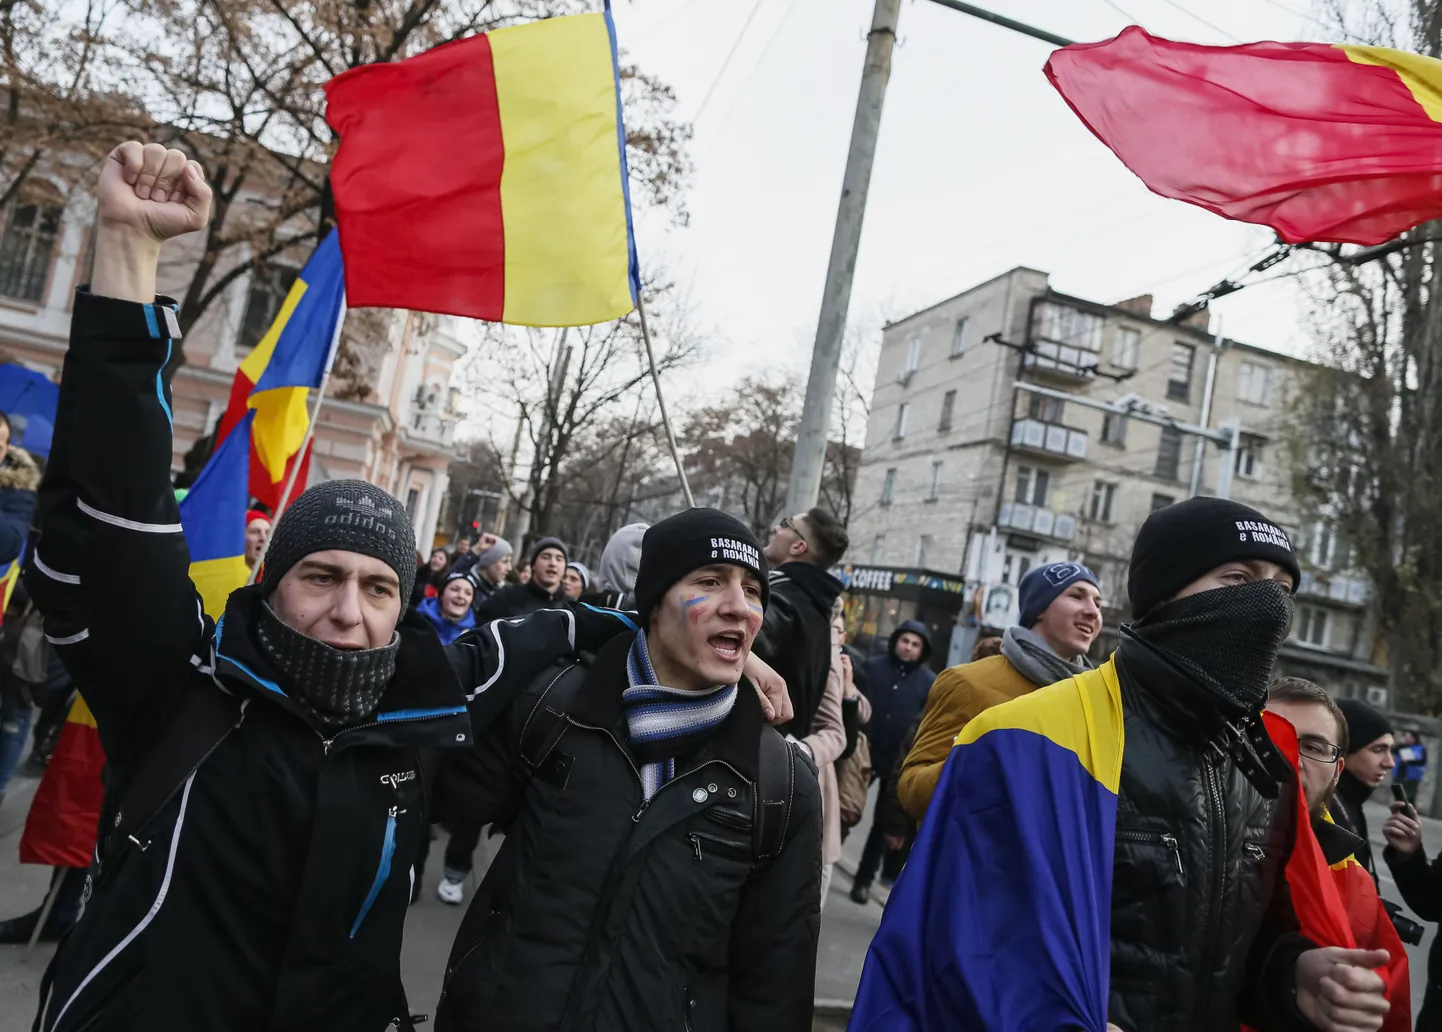 Iga-aastane demonstratsioon Chișinăus, kus nõuti Moldova ja Rumeenia ühinemist. Foto on tehtud 1. detsembril.